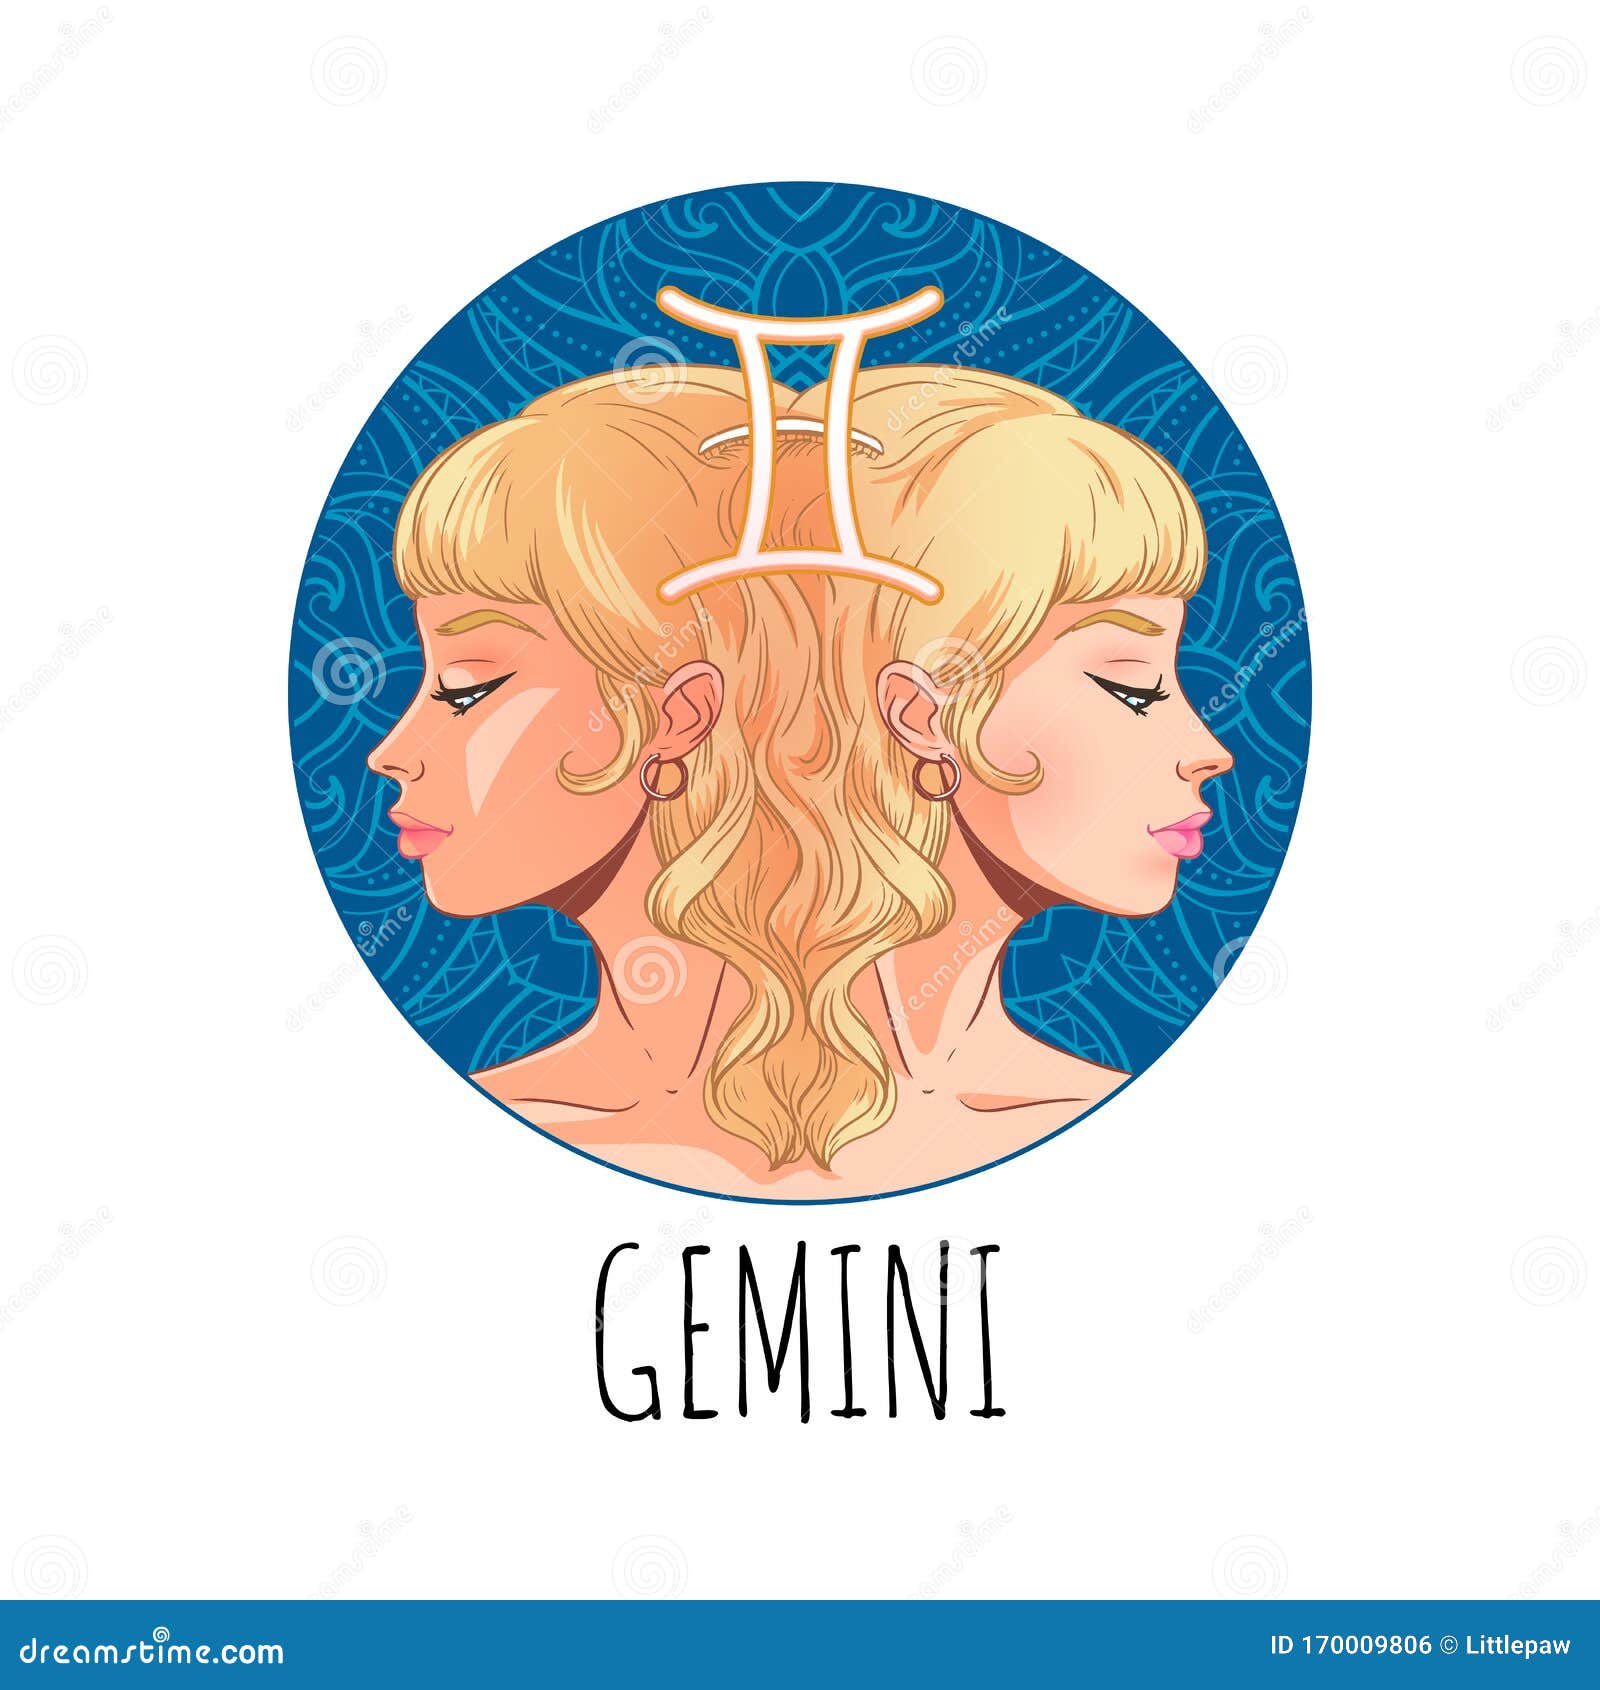 Gemini Zodiac Sign Artwork, Beautiful Girl Face, Horoscope Symbol, Star ...